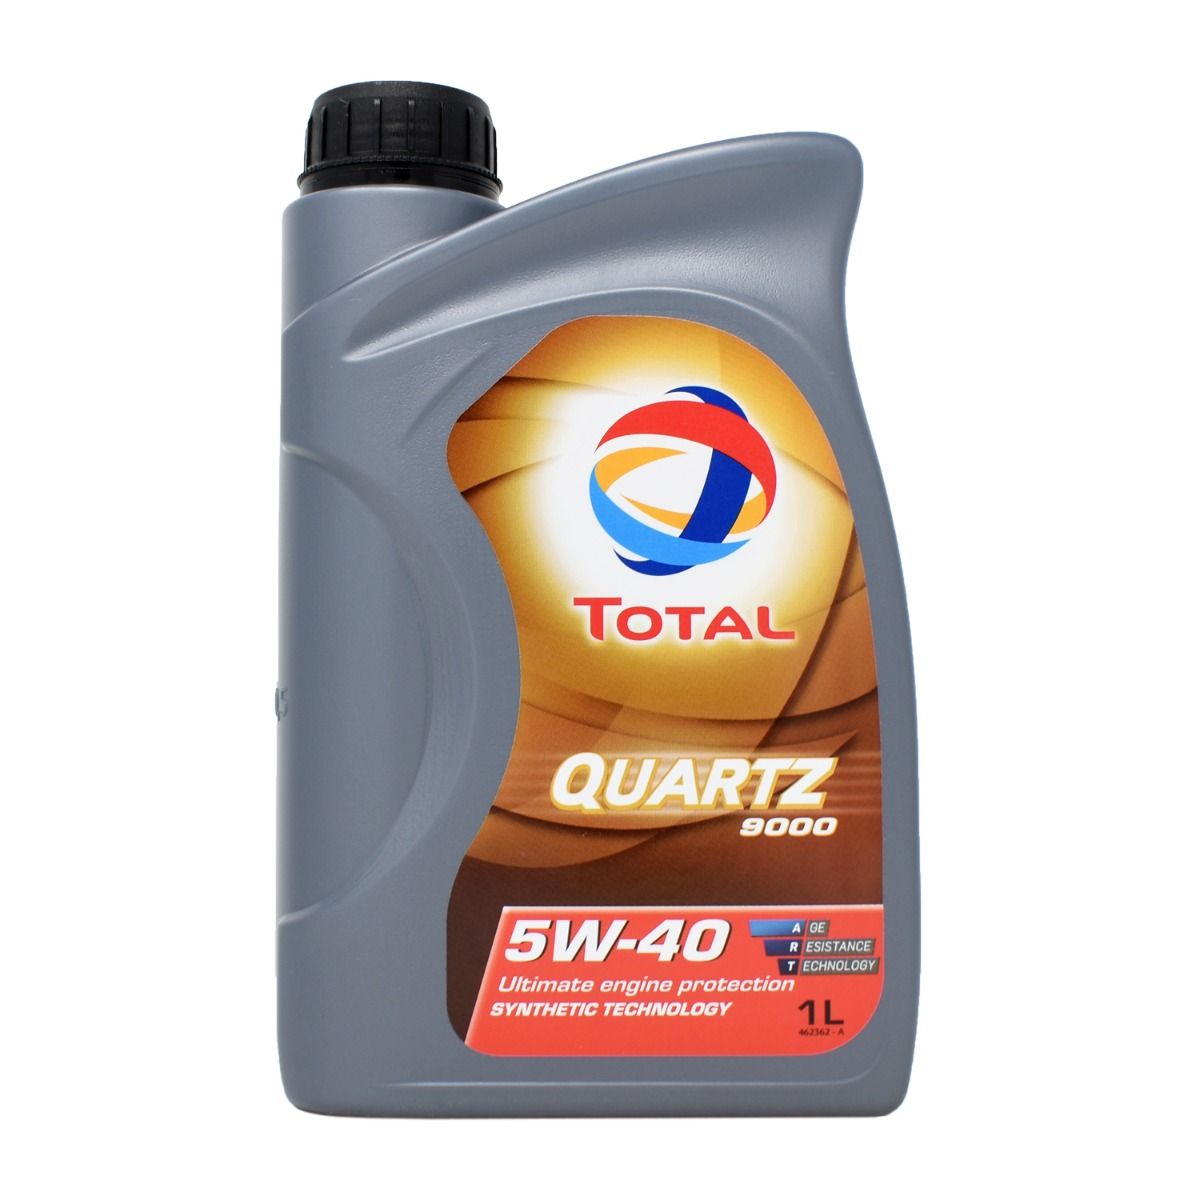 Total Quartz 9000 Energy + Mann VW5OILFLTR3KIT Oil Change Kit - 5W-40 Fully  Synthetic - VW